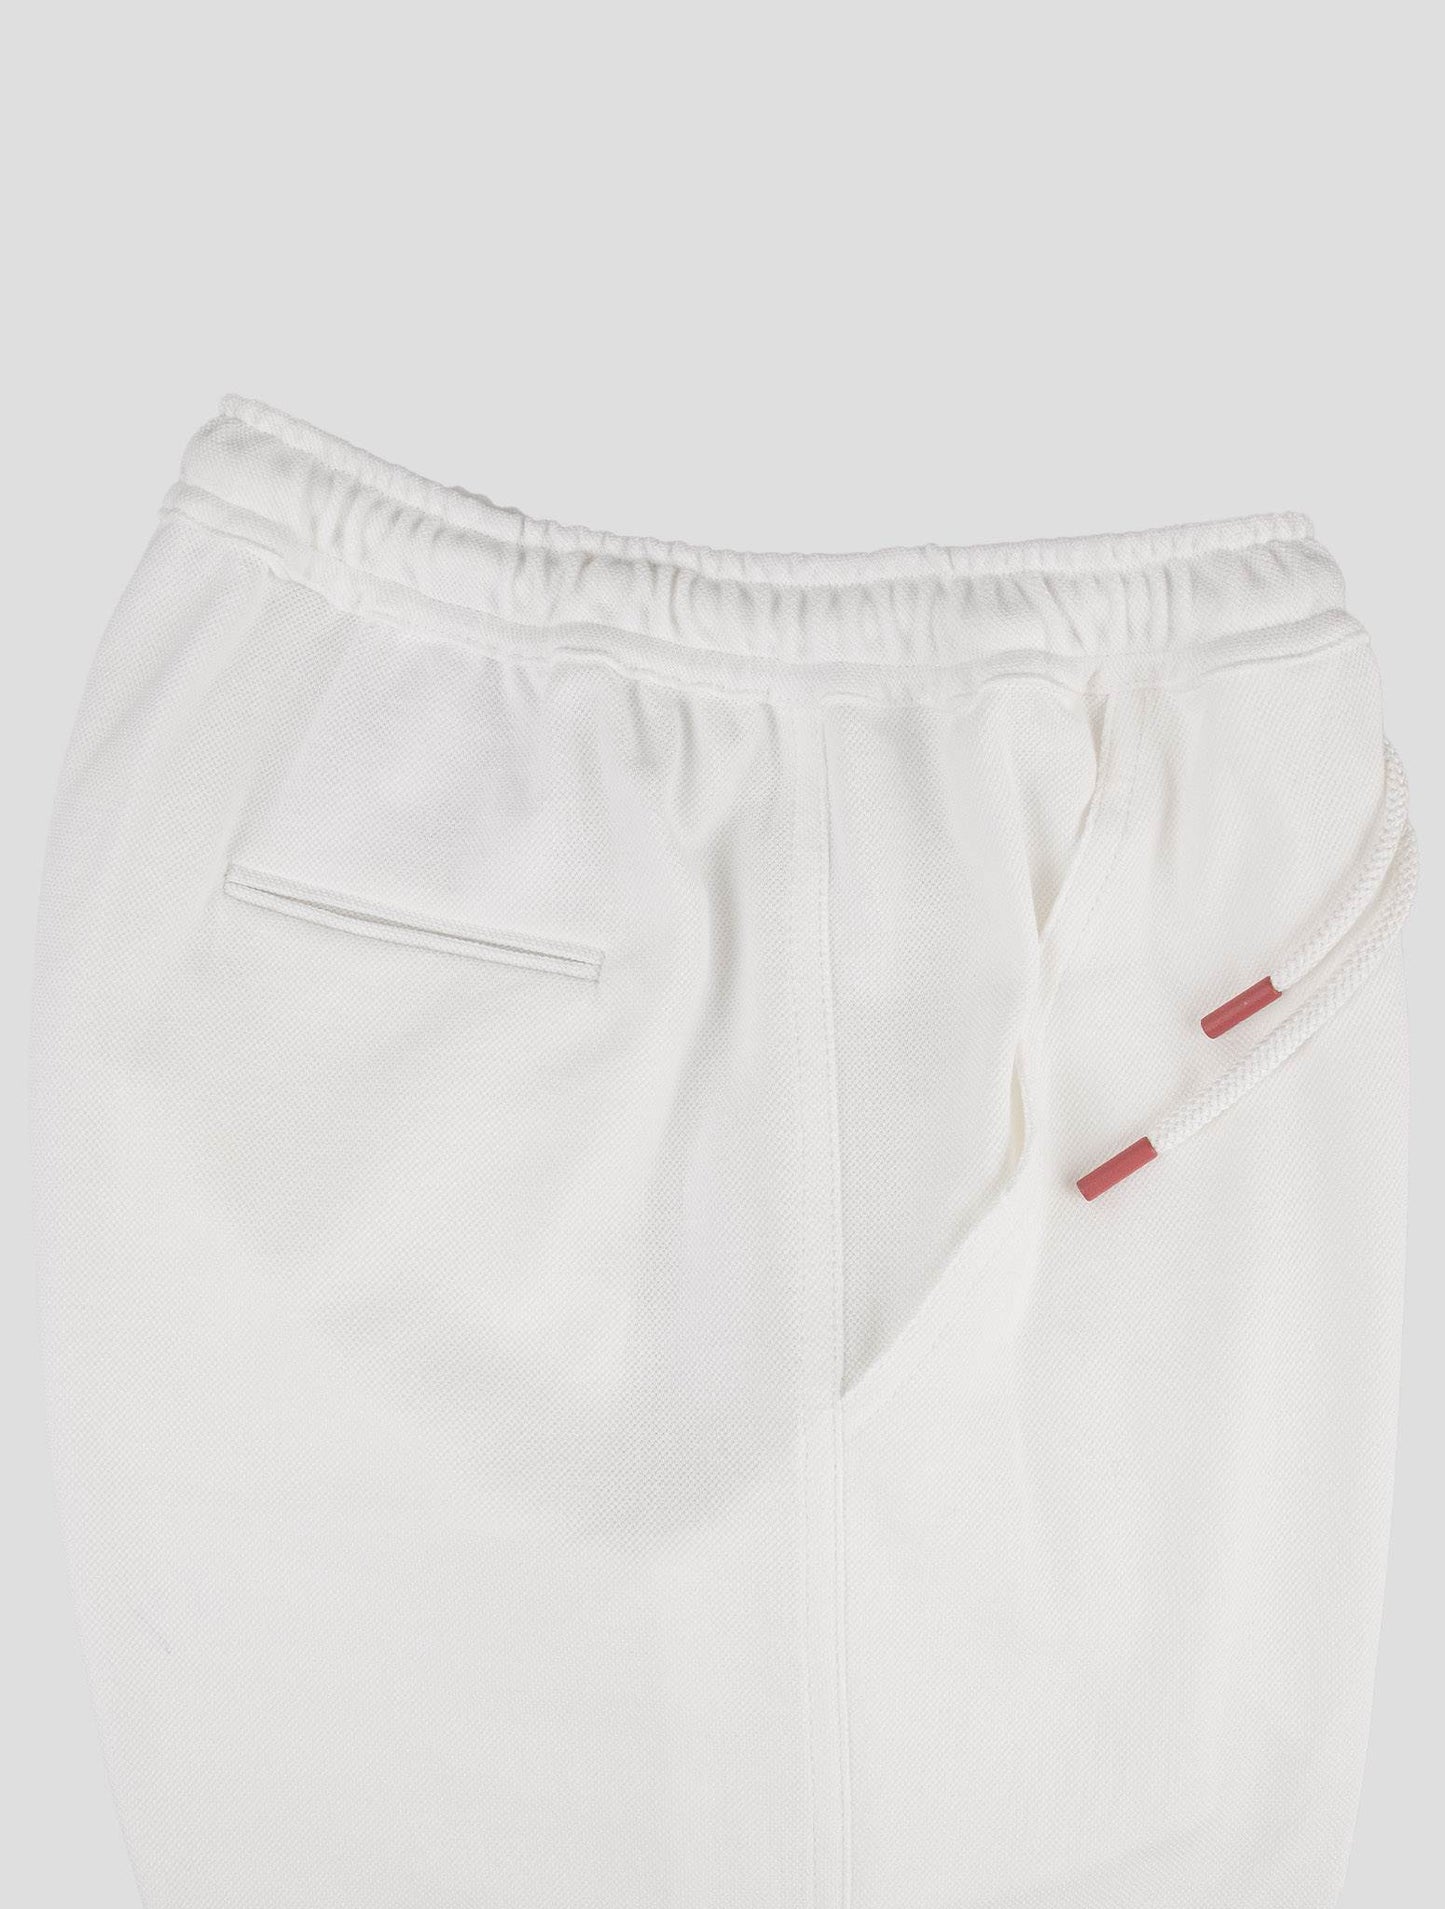 Pantalones cortos de algodón blancos de Kiton